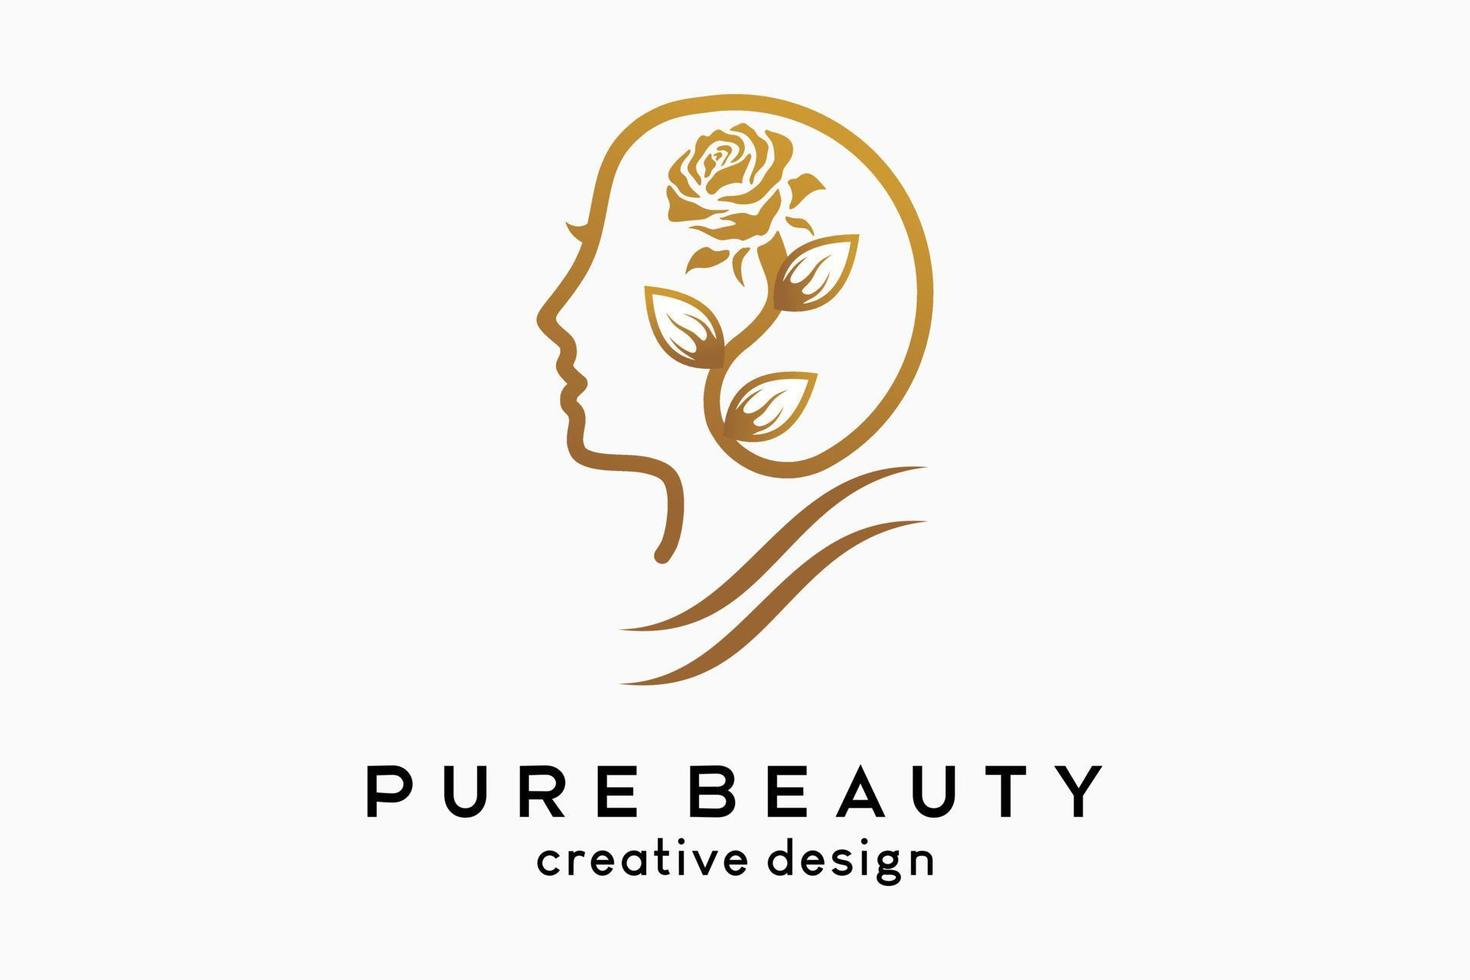 semplice ed elegante logo femminile per beauty business, fiori e foglie abbinato a testa da donna in fantasia line art vettore